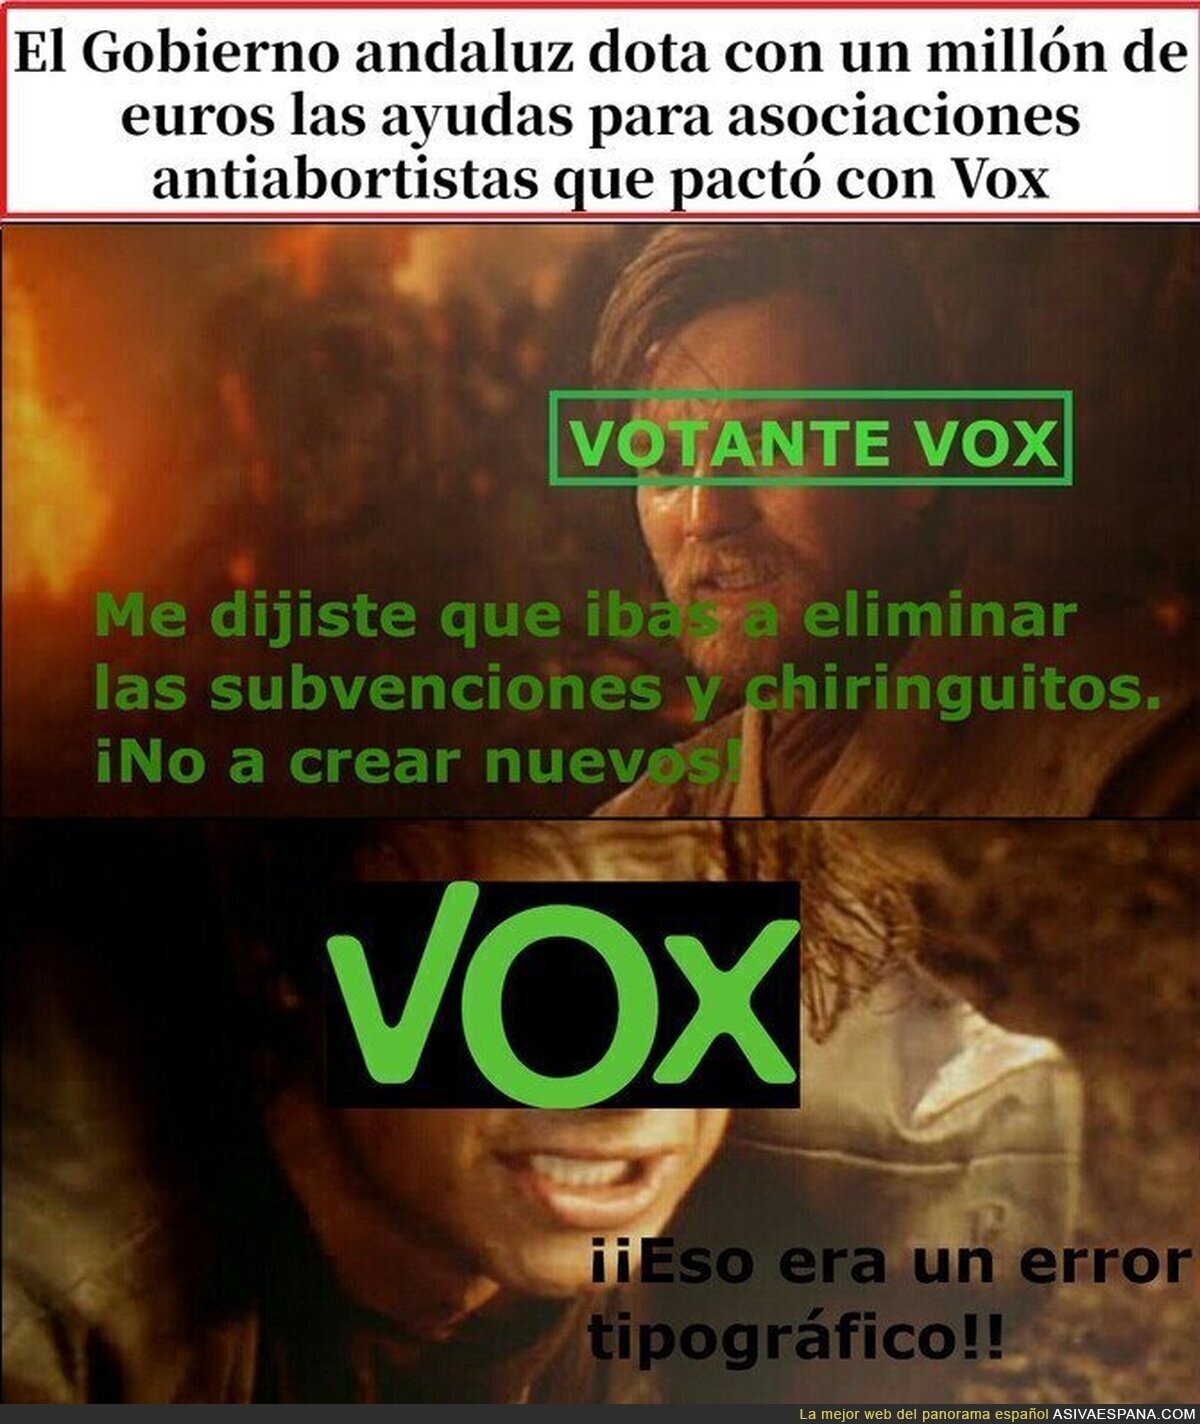 Cuando los votantes de VOX se dan cuenta de que vox subvenciona chiringuitos